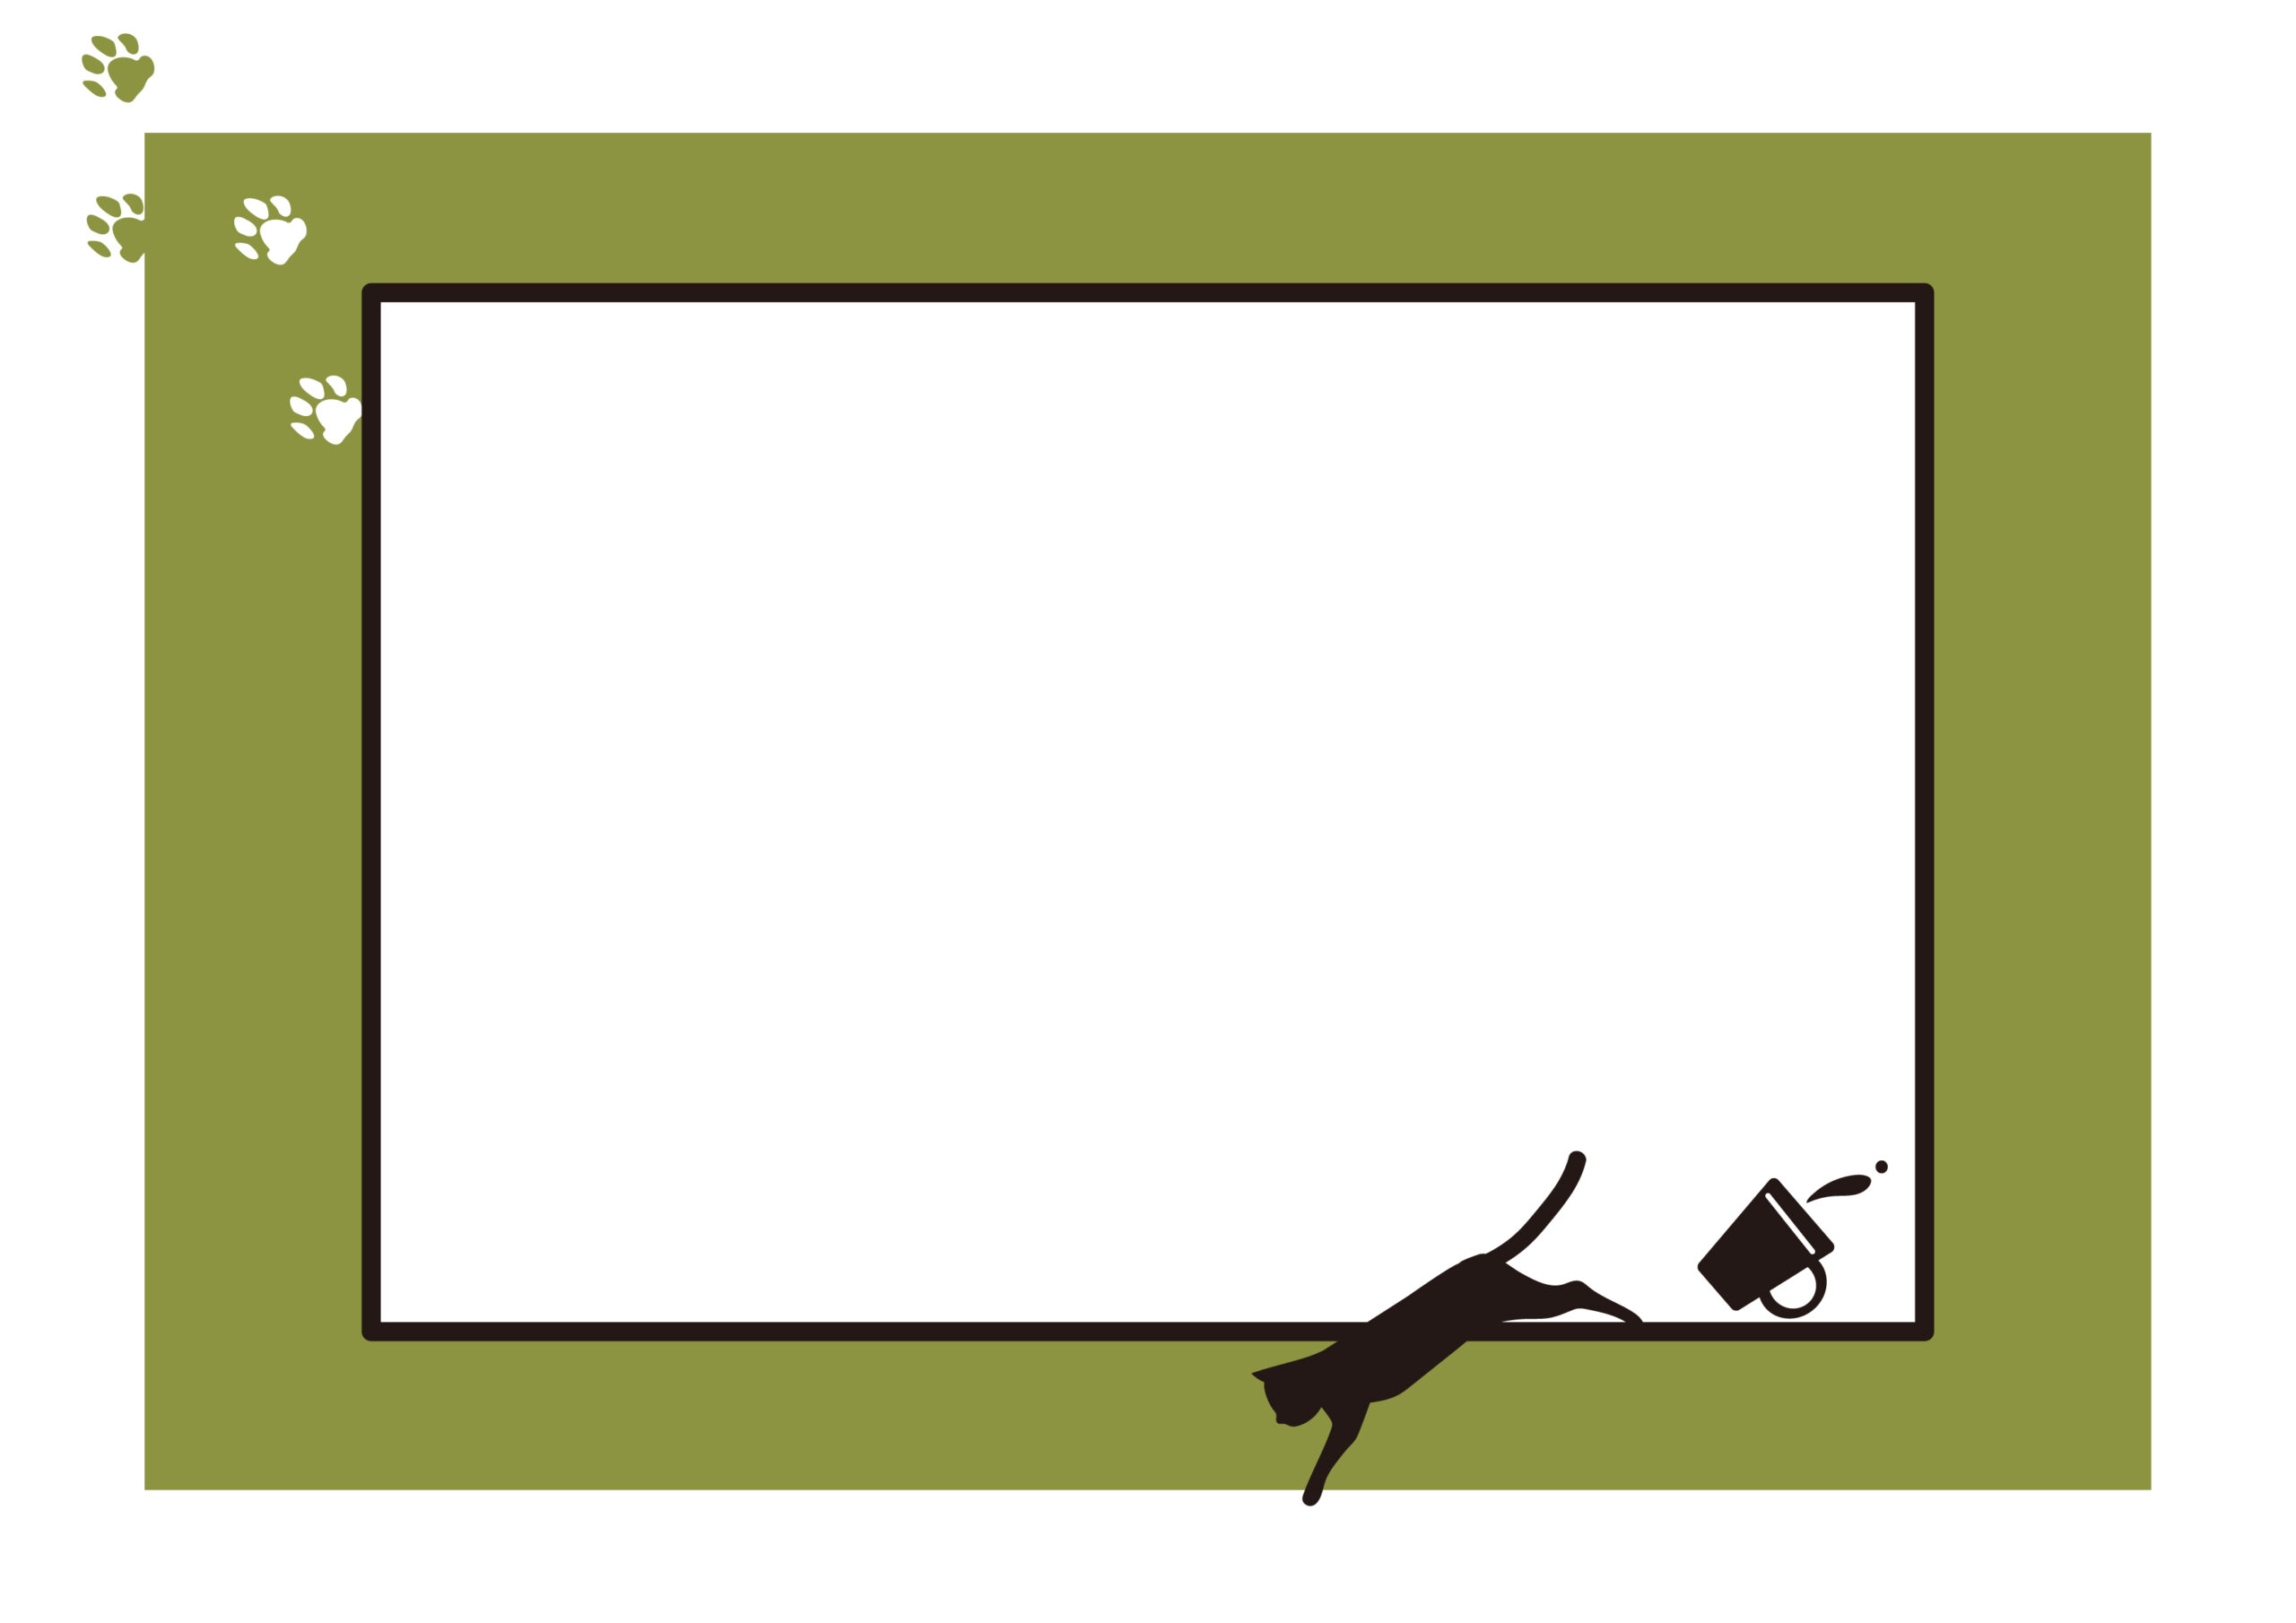 学校や会社、施設内の注意喚起・注意書きの張り紙作成にご利用いただける猫のシルエットイラストと足跡が描かれたおしゃれなフレーム素材になります。印刷して壁などに貼ったり、SNSやWEBサイト掲示用などにもご使用いただけます。ダウンロード